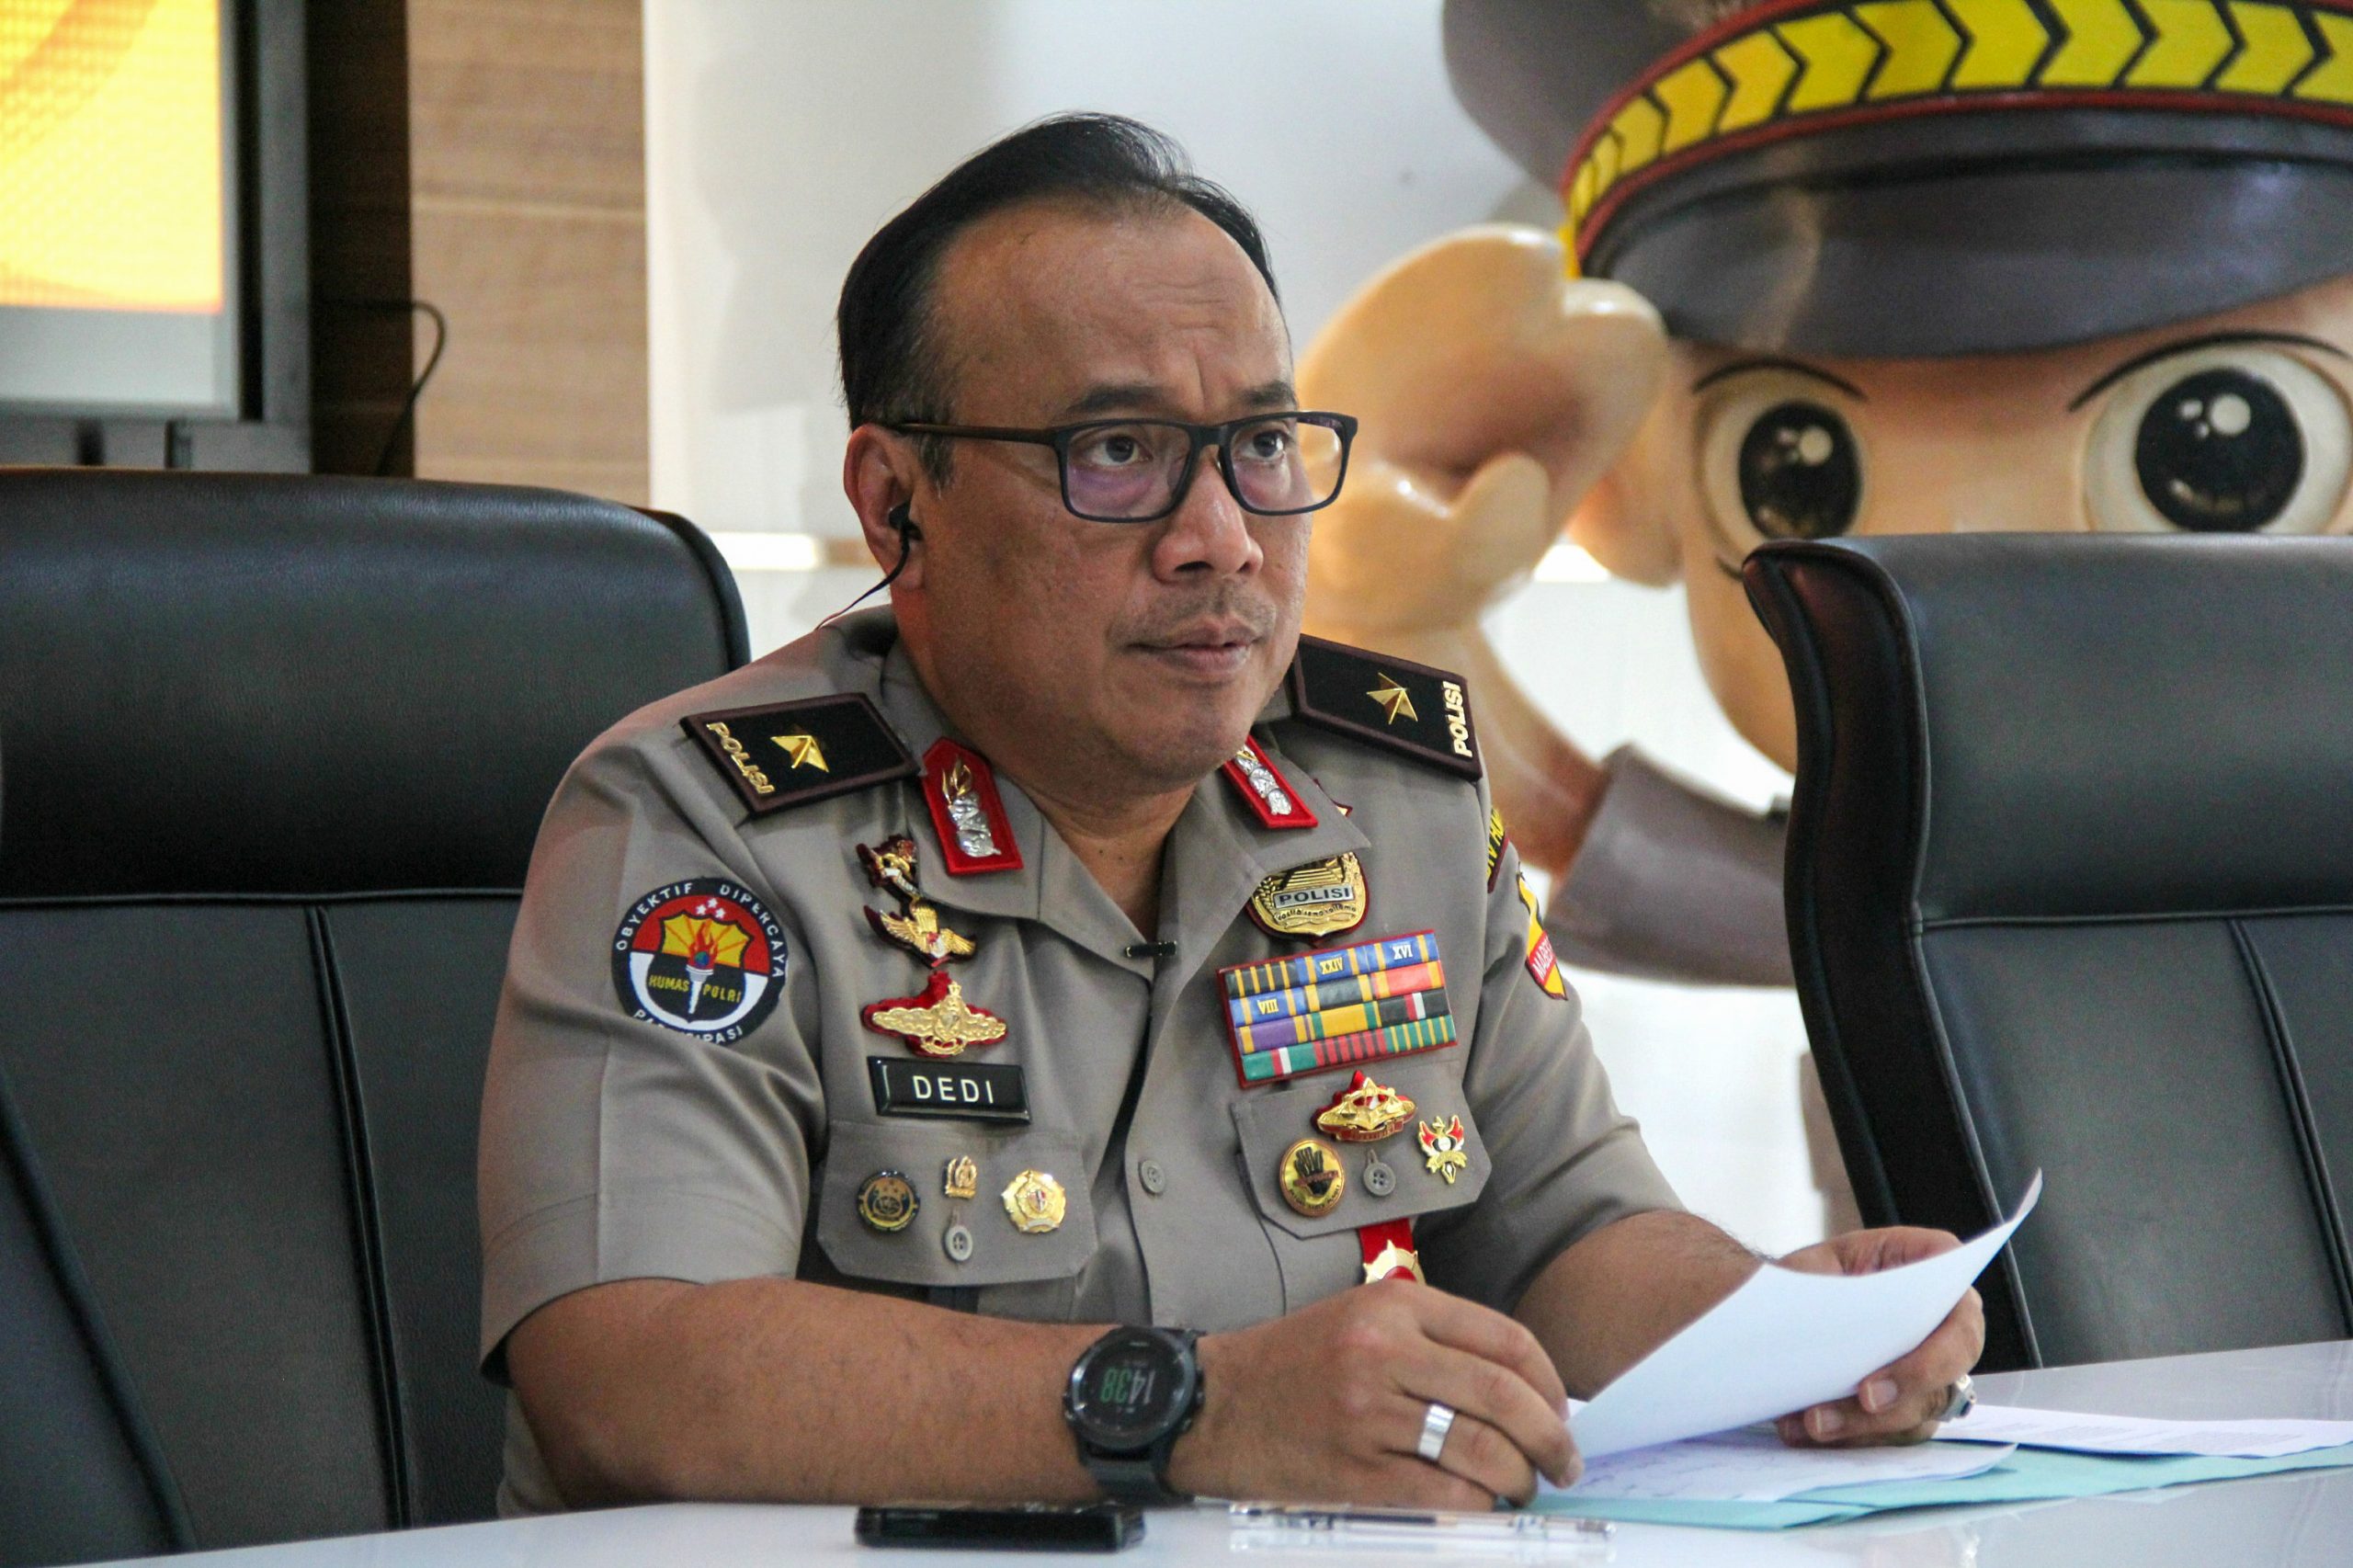 Kepala Divisi Humas Polri Irjen Dedi Prasetyo mengatakan, pihak Polda Sumatera Utara (Sumut) sedang memeriksa Kapolrestabes Medan Kombes (Pol) Riko Sunarko yang diduga menerima suap dari istri bandar narkoba.